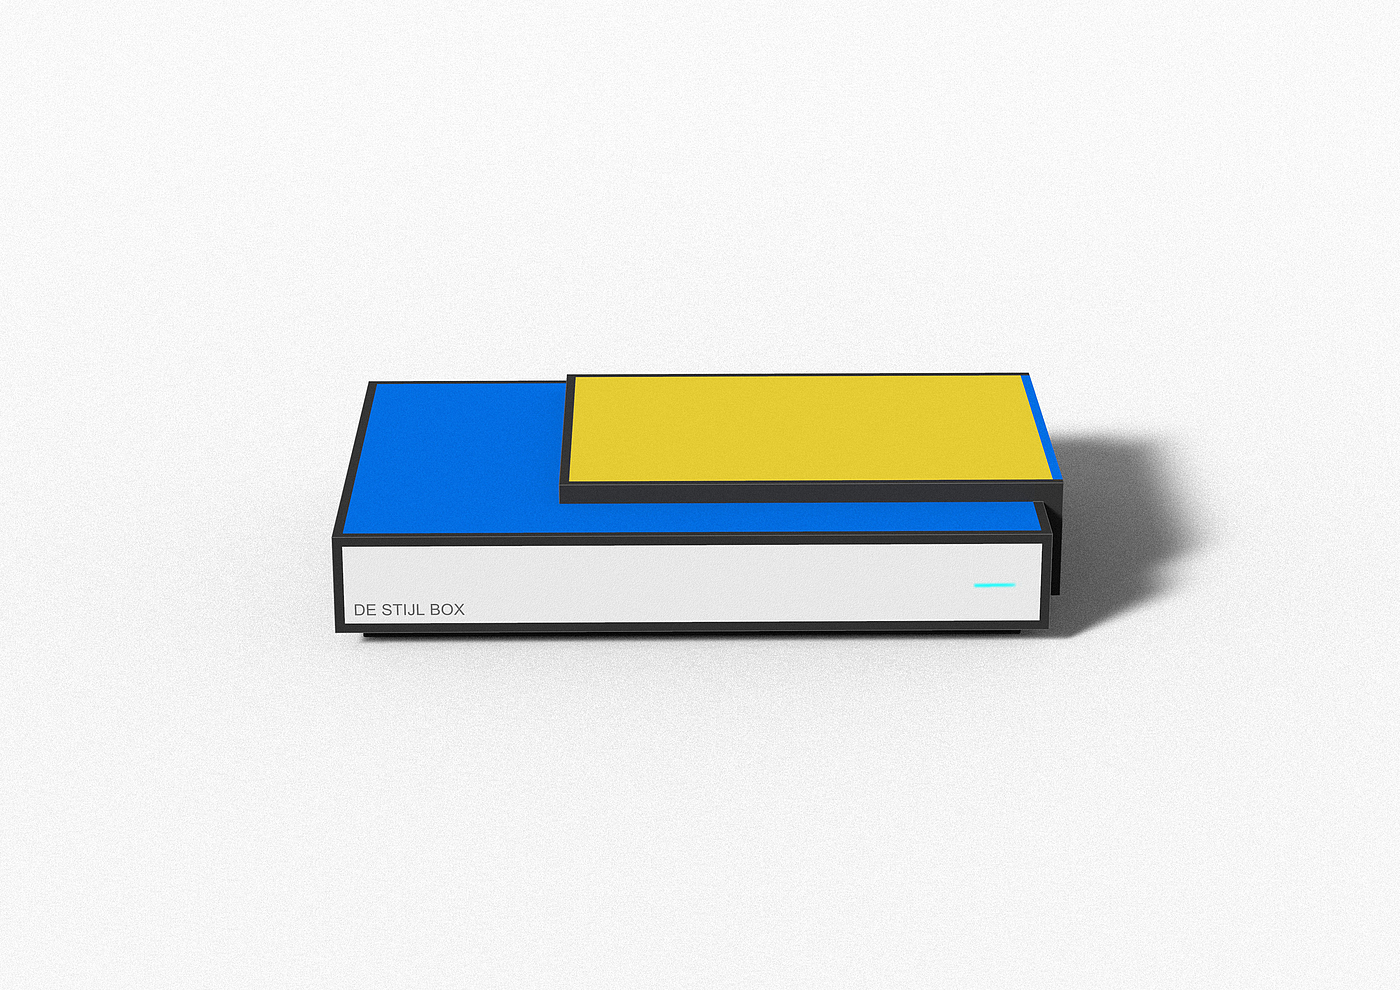 机顶盒，盒子，硬盘，蒙德里安，风格派，红黄蓝，方块，简洁，